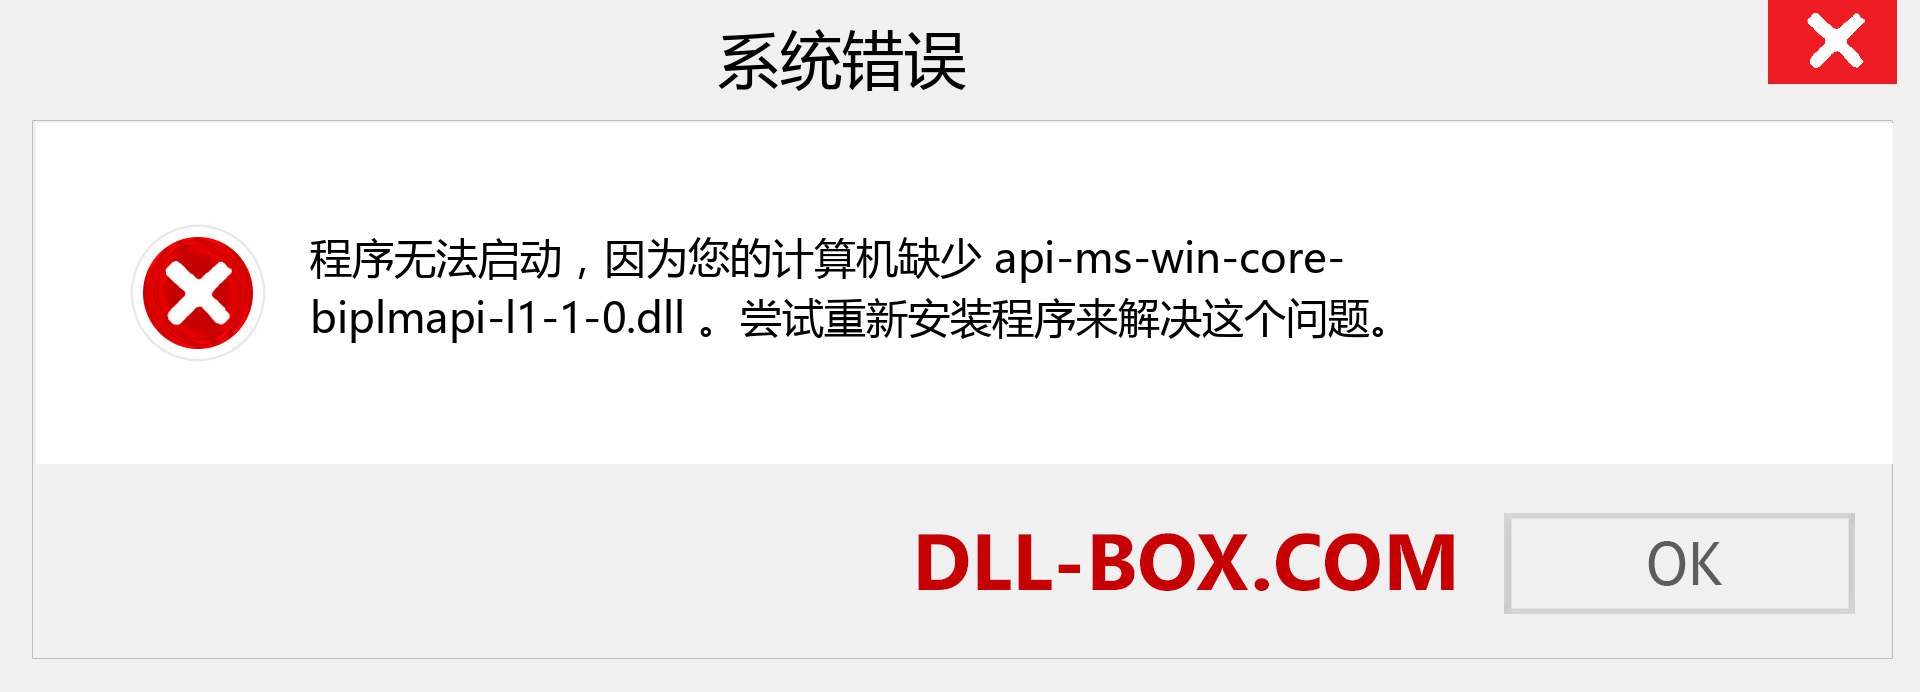 api-ms-win-core-biplmapi-l1-1-0.dll 文件丢失？。 适用于 Windows 7、8、10 的下载 - 修复 Windows、照片、图像上的 api-ms-win-core-biplmapi-l1-1-0 dll 丢失错误